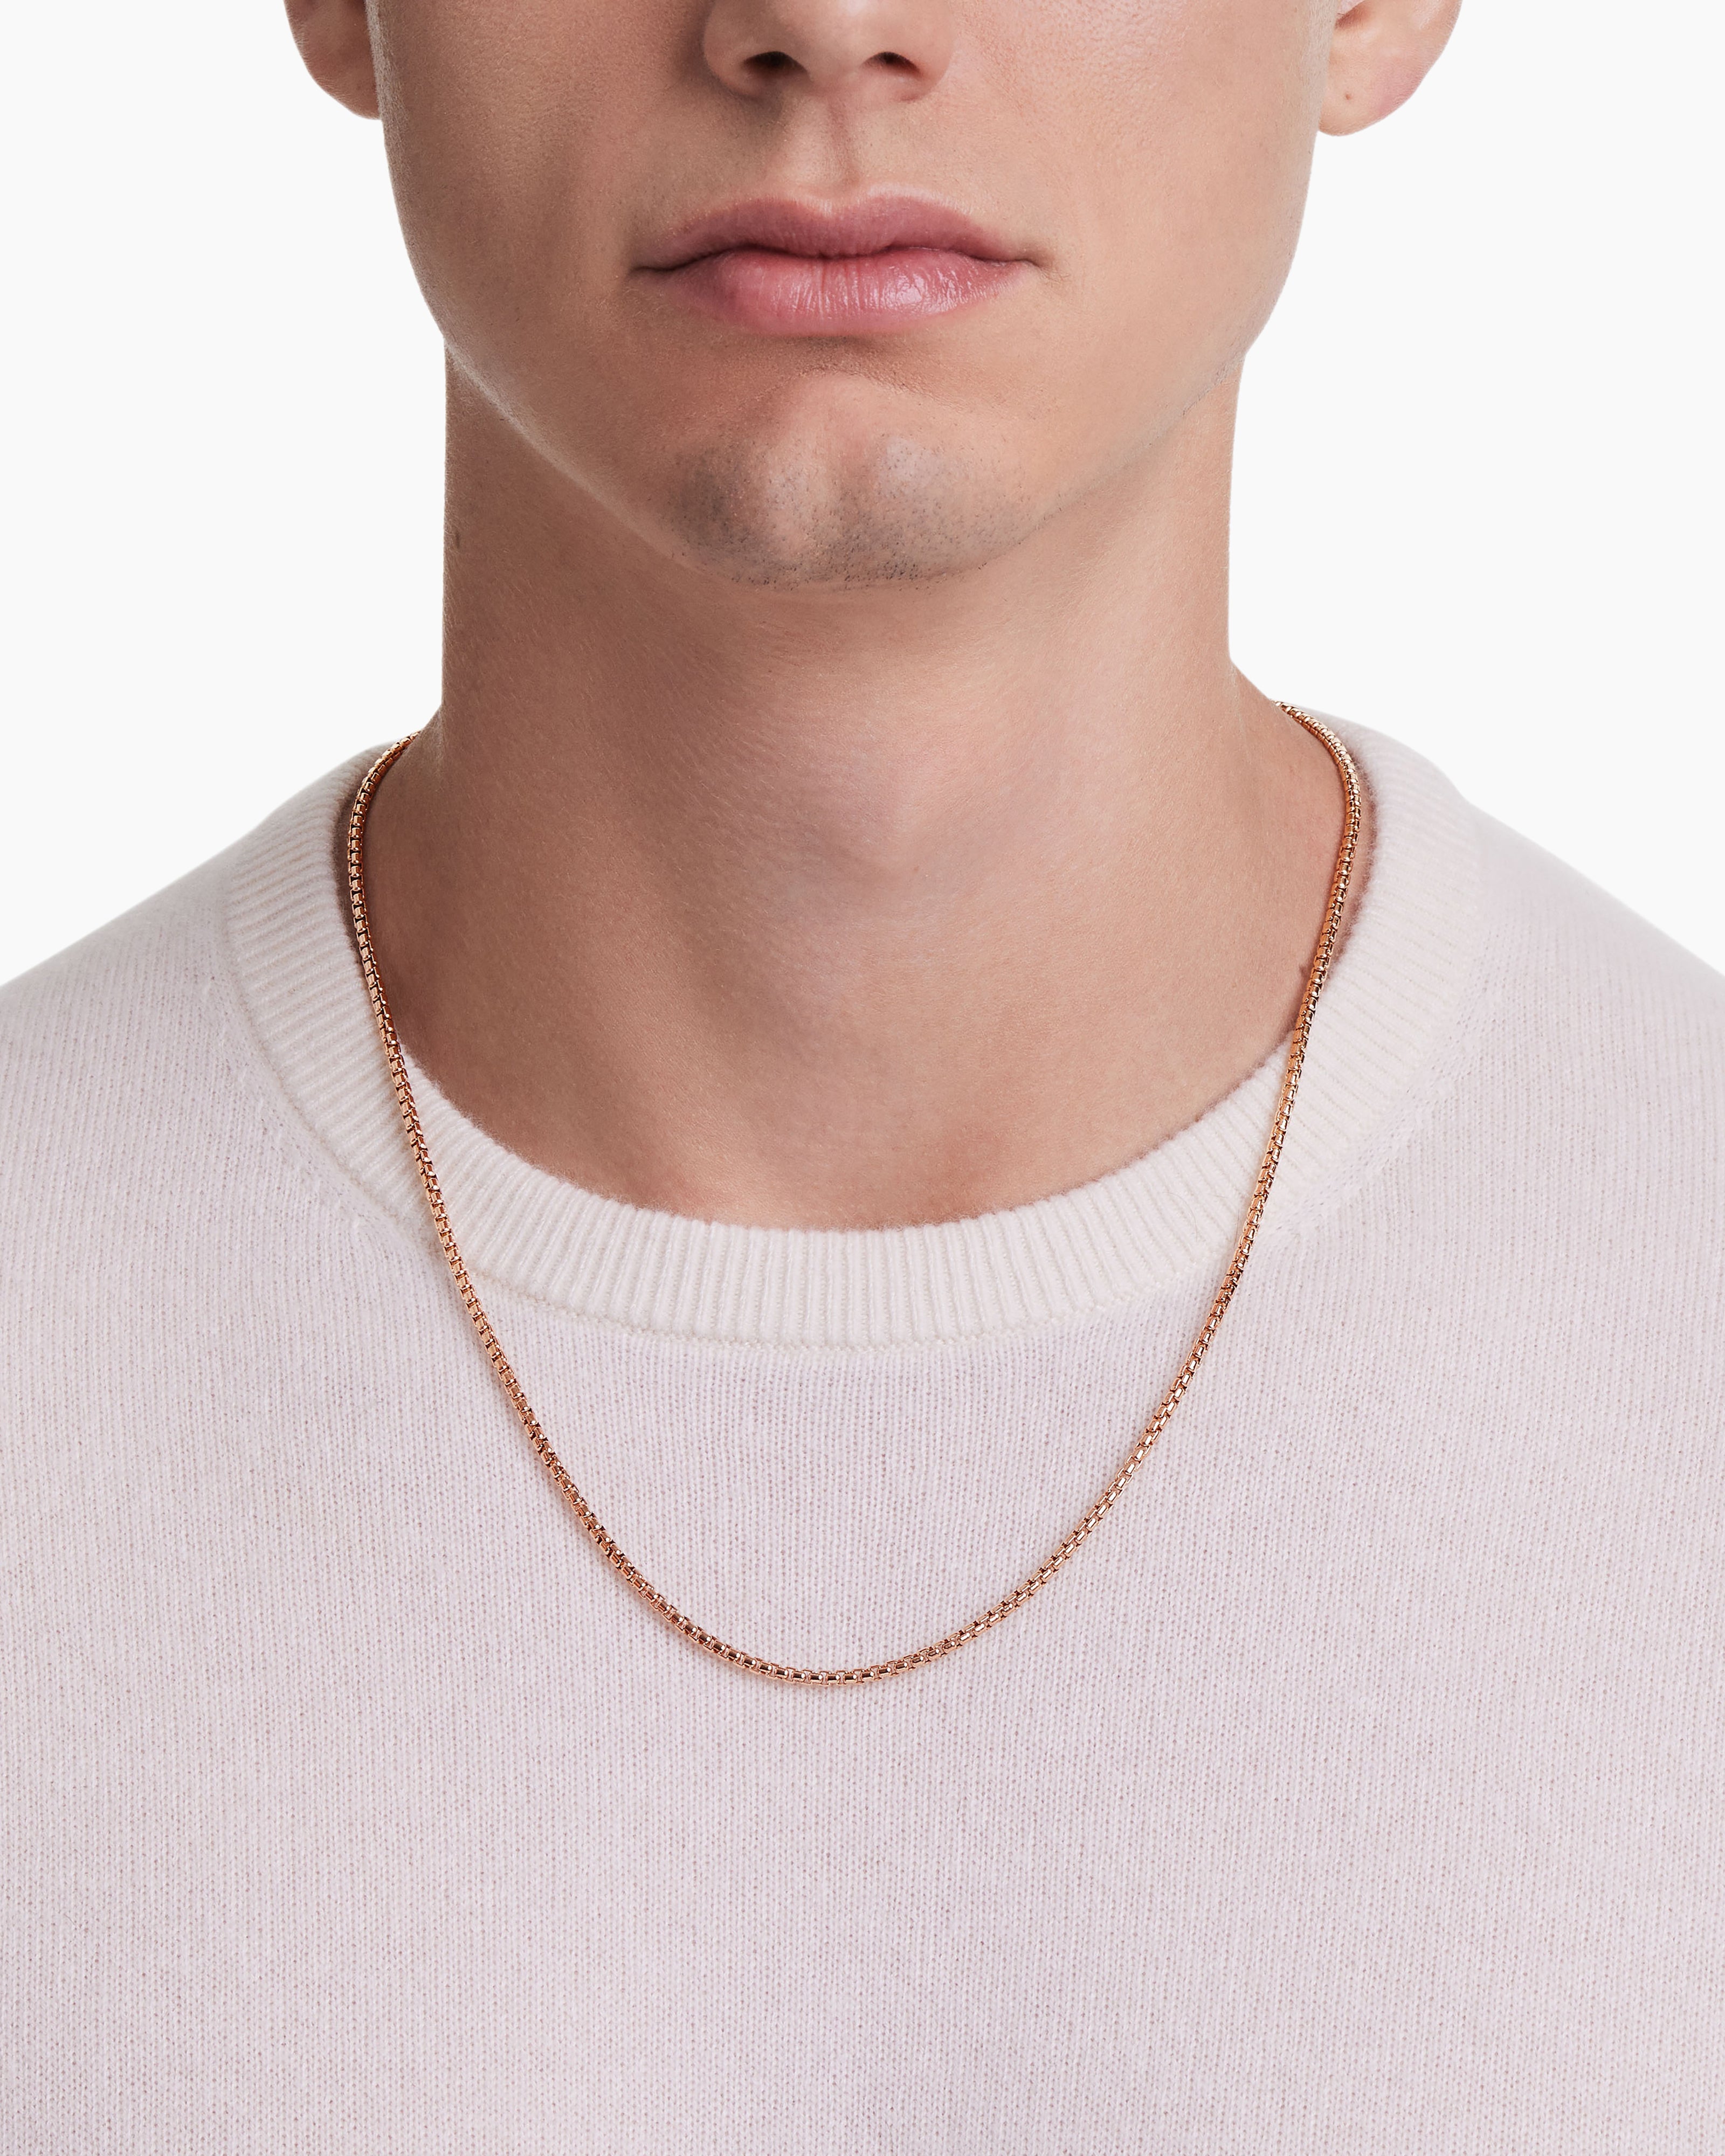 Gold Lightning Bolt Oval Pendant Necklace For Men - Boutique Wear RENN